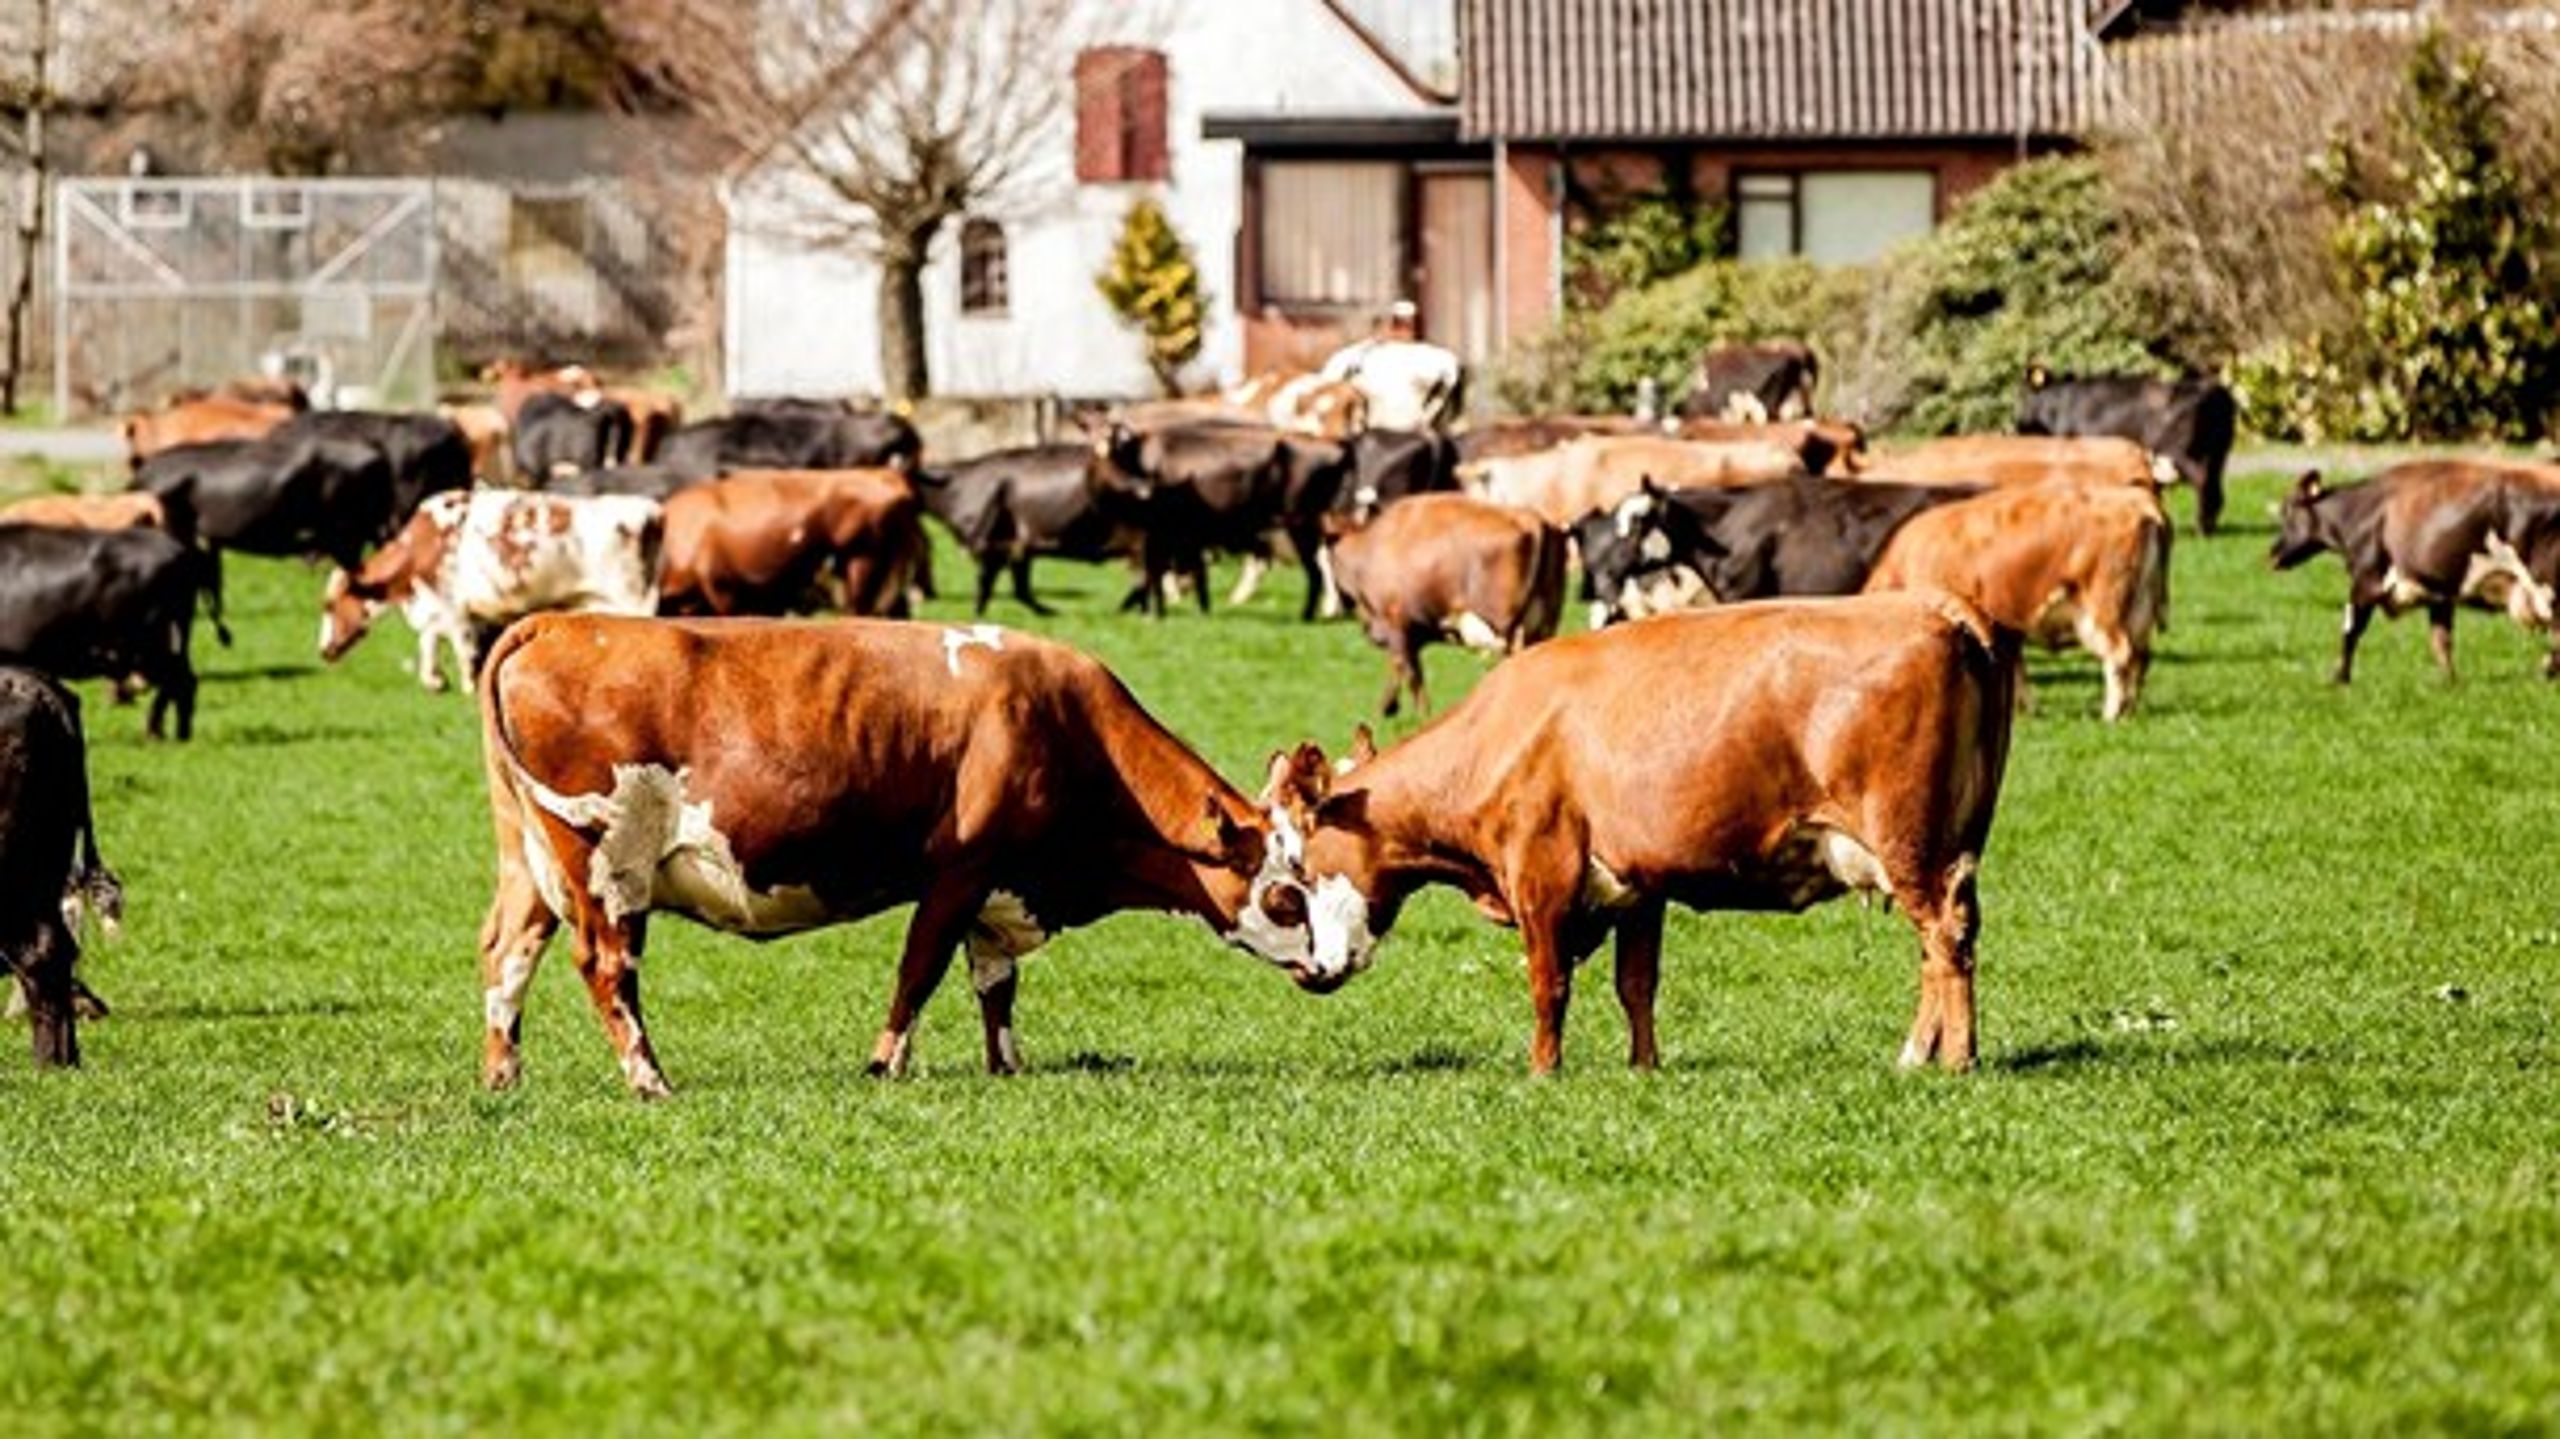 Der forskes i&nbsp;at reducere metan-udledningen fra køer med nye fodringsstrategier, nye typer af foder og udvælgelse af køer med de mest klimavenlige gener, skriver Jørgen Hald Christensen.